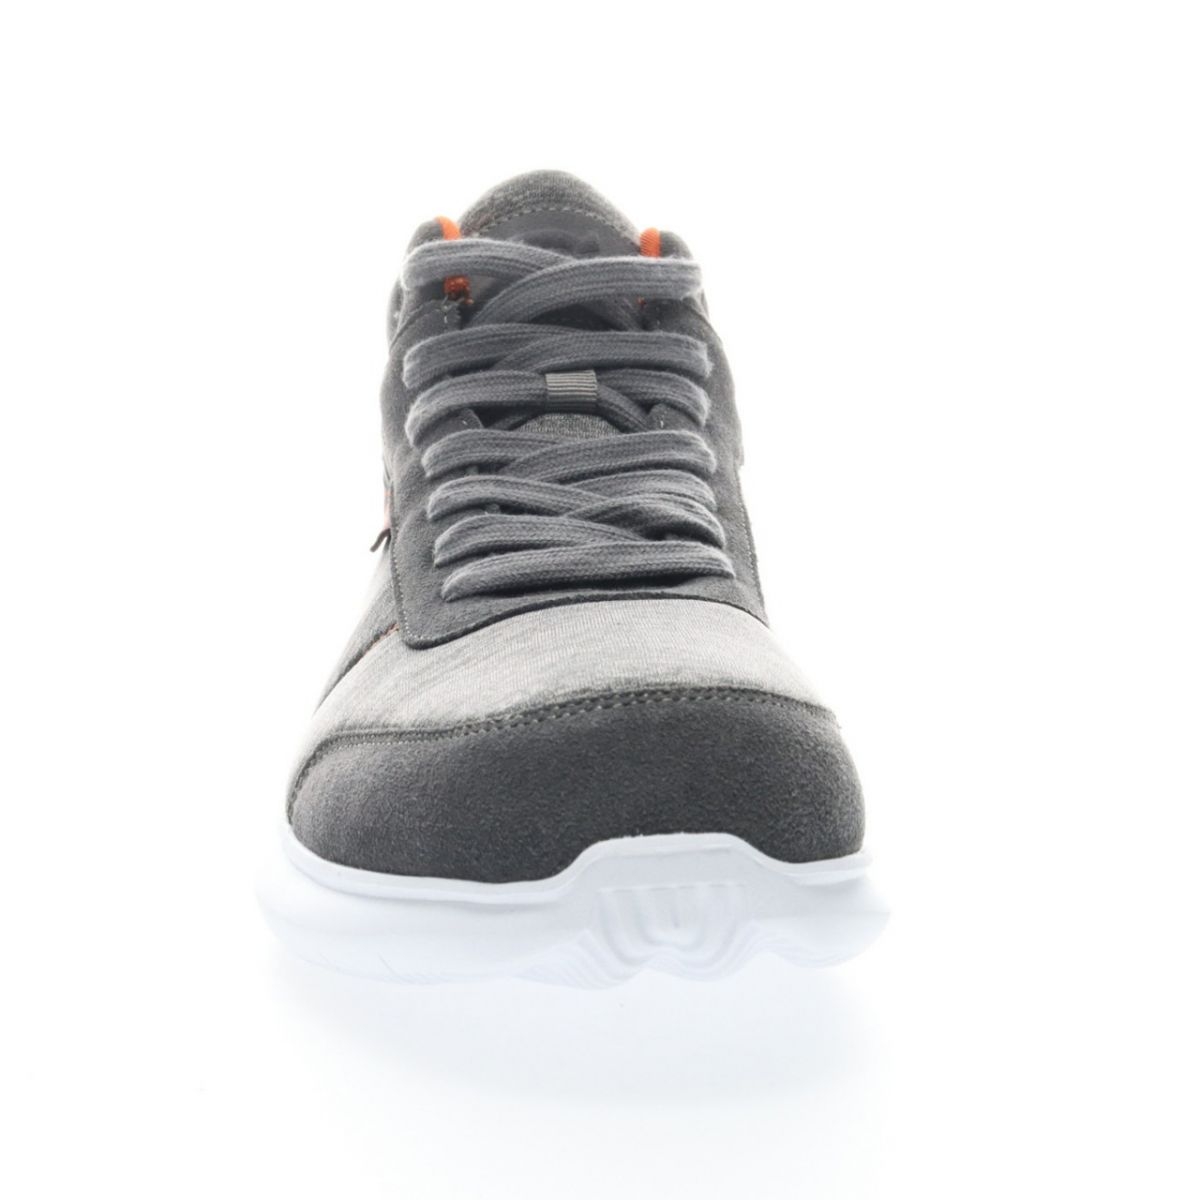 Propet Men's Viator Hi Sneaker Grey/Orange - MAA112MGOR Grey/orange - Grey/orange, 16 X-Wide